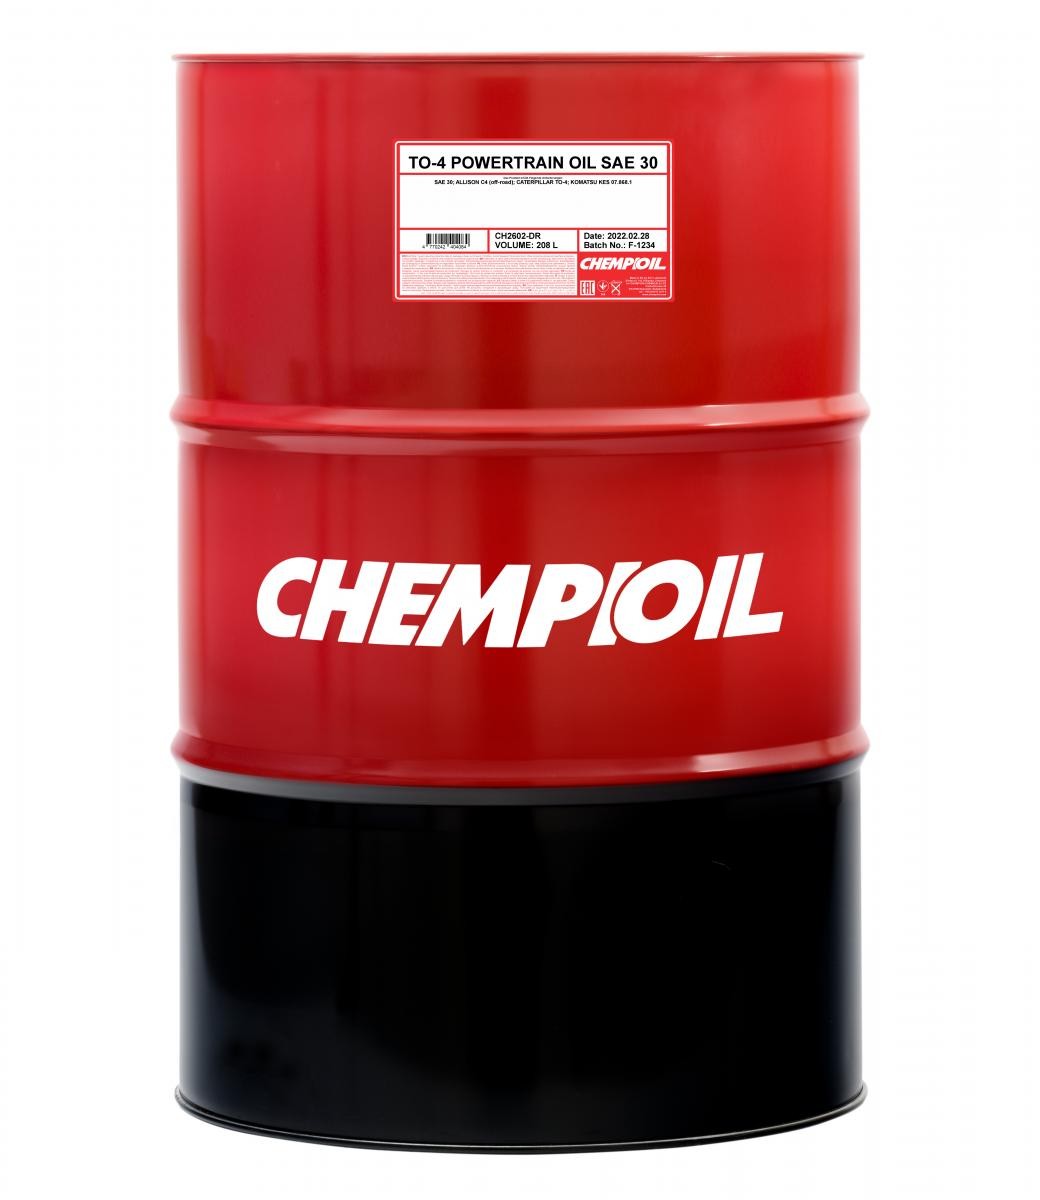 CHEMPIOIL POWERTRAIN OIL, TO-4 SAE 30, 208l Olio CH2602-DR acquisto online